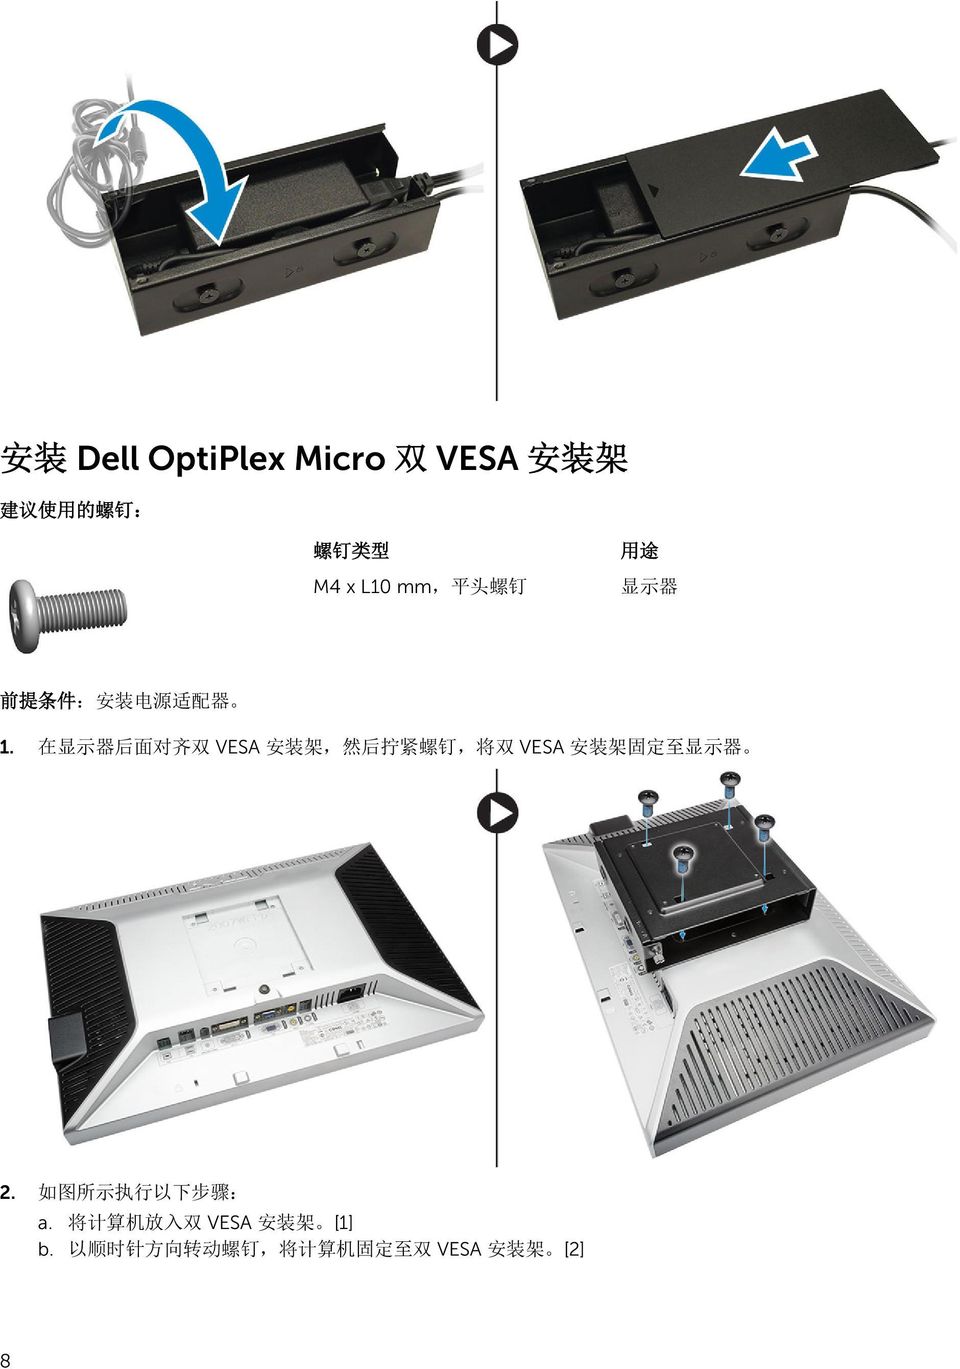 在 显 示 器 后 面 对 齐 双 VESA 安 装 架, 然 后 拧 紧 螺 钉, 将 双 VESA 安 装 架 固 定 至 显 示 器 2.